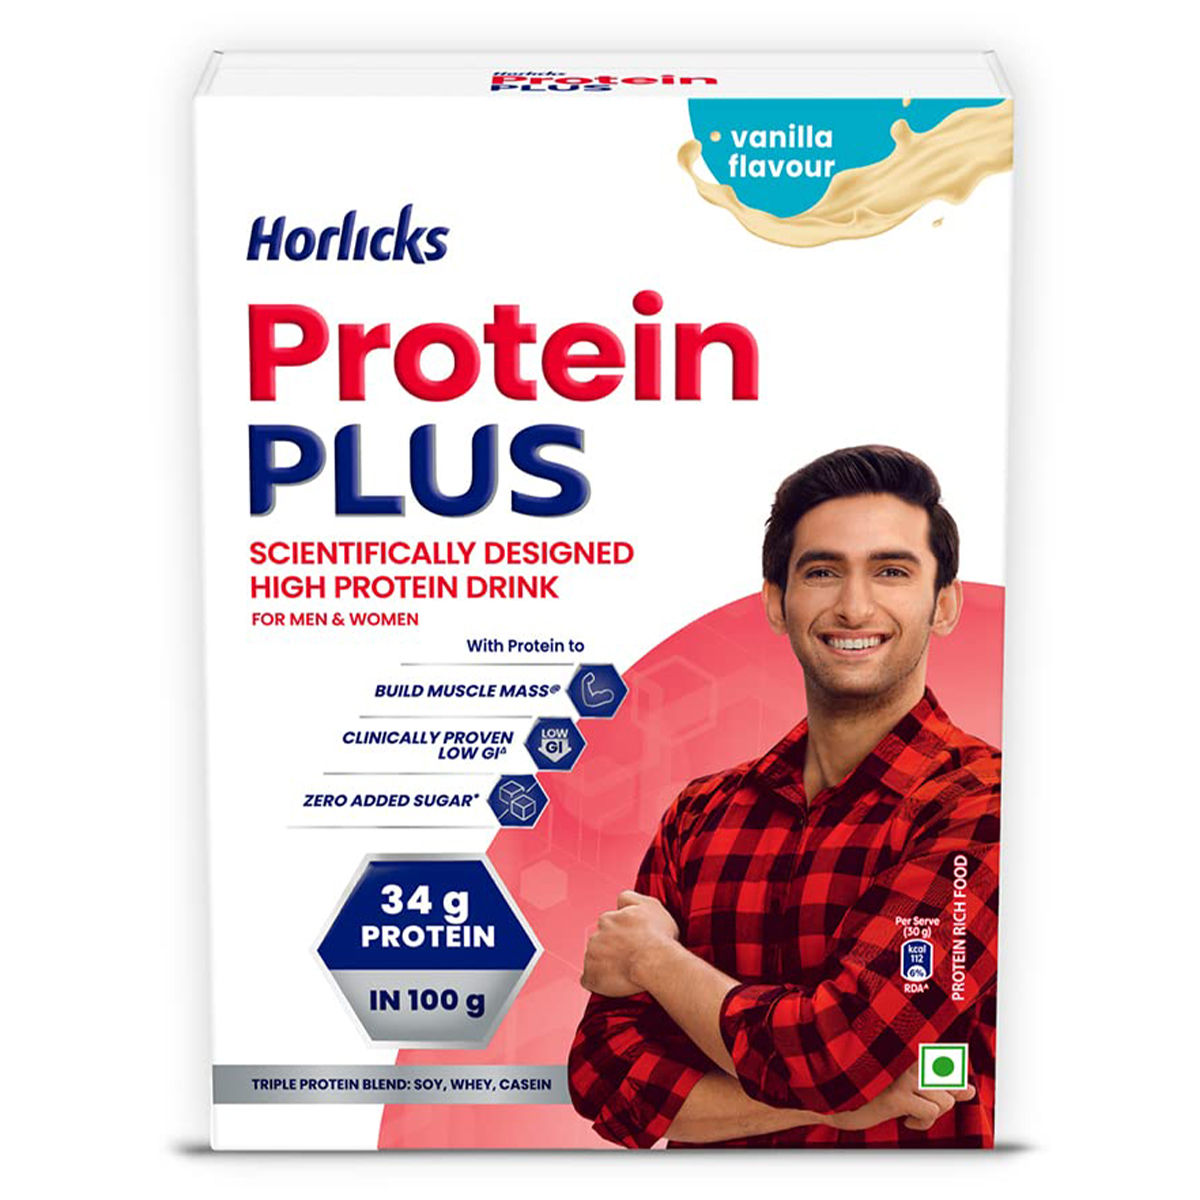 Buy Horlicks Protein Plus Vanilla Flavour Nutrition Drink Powder, 400 gm Online